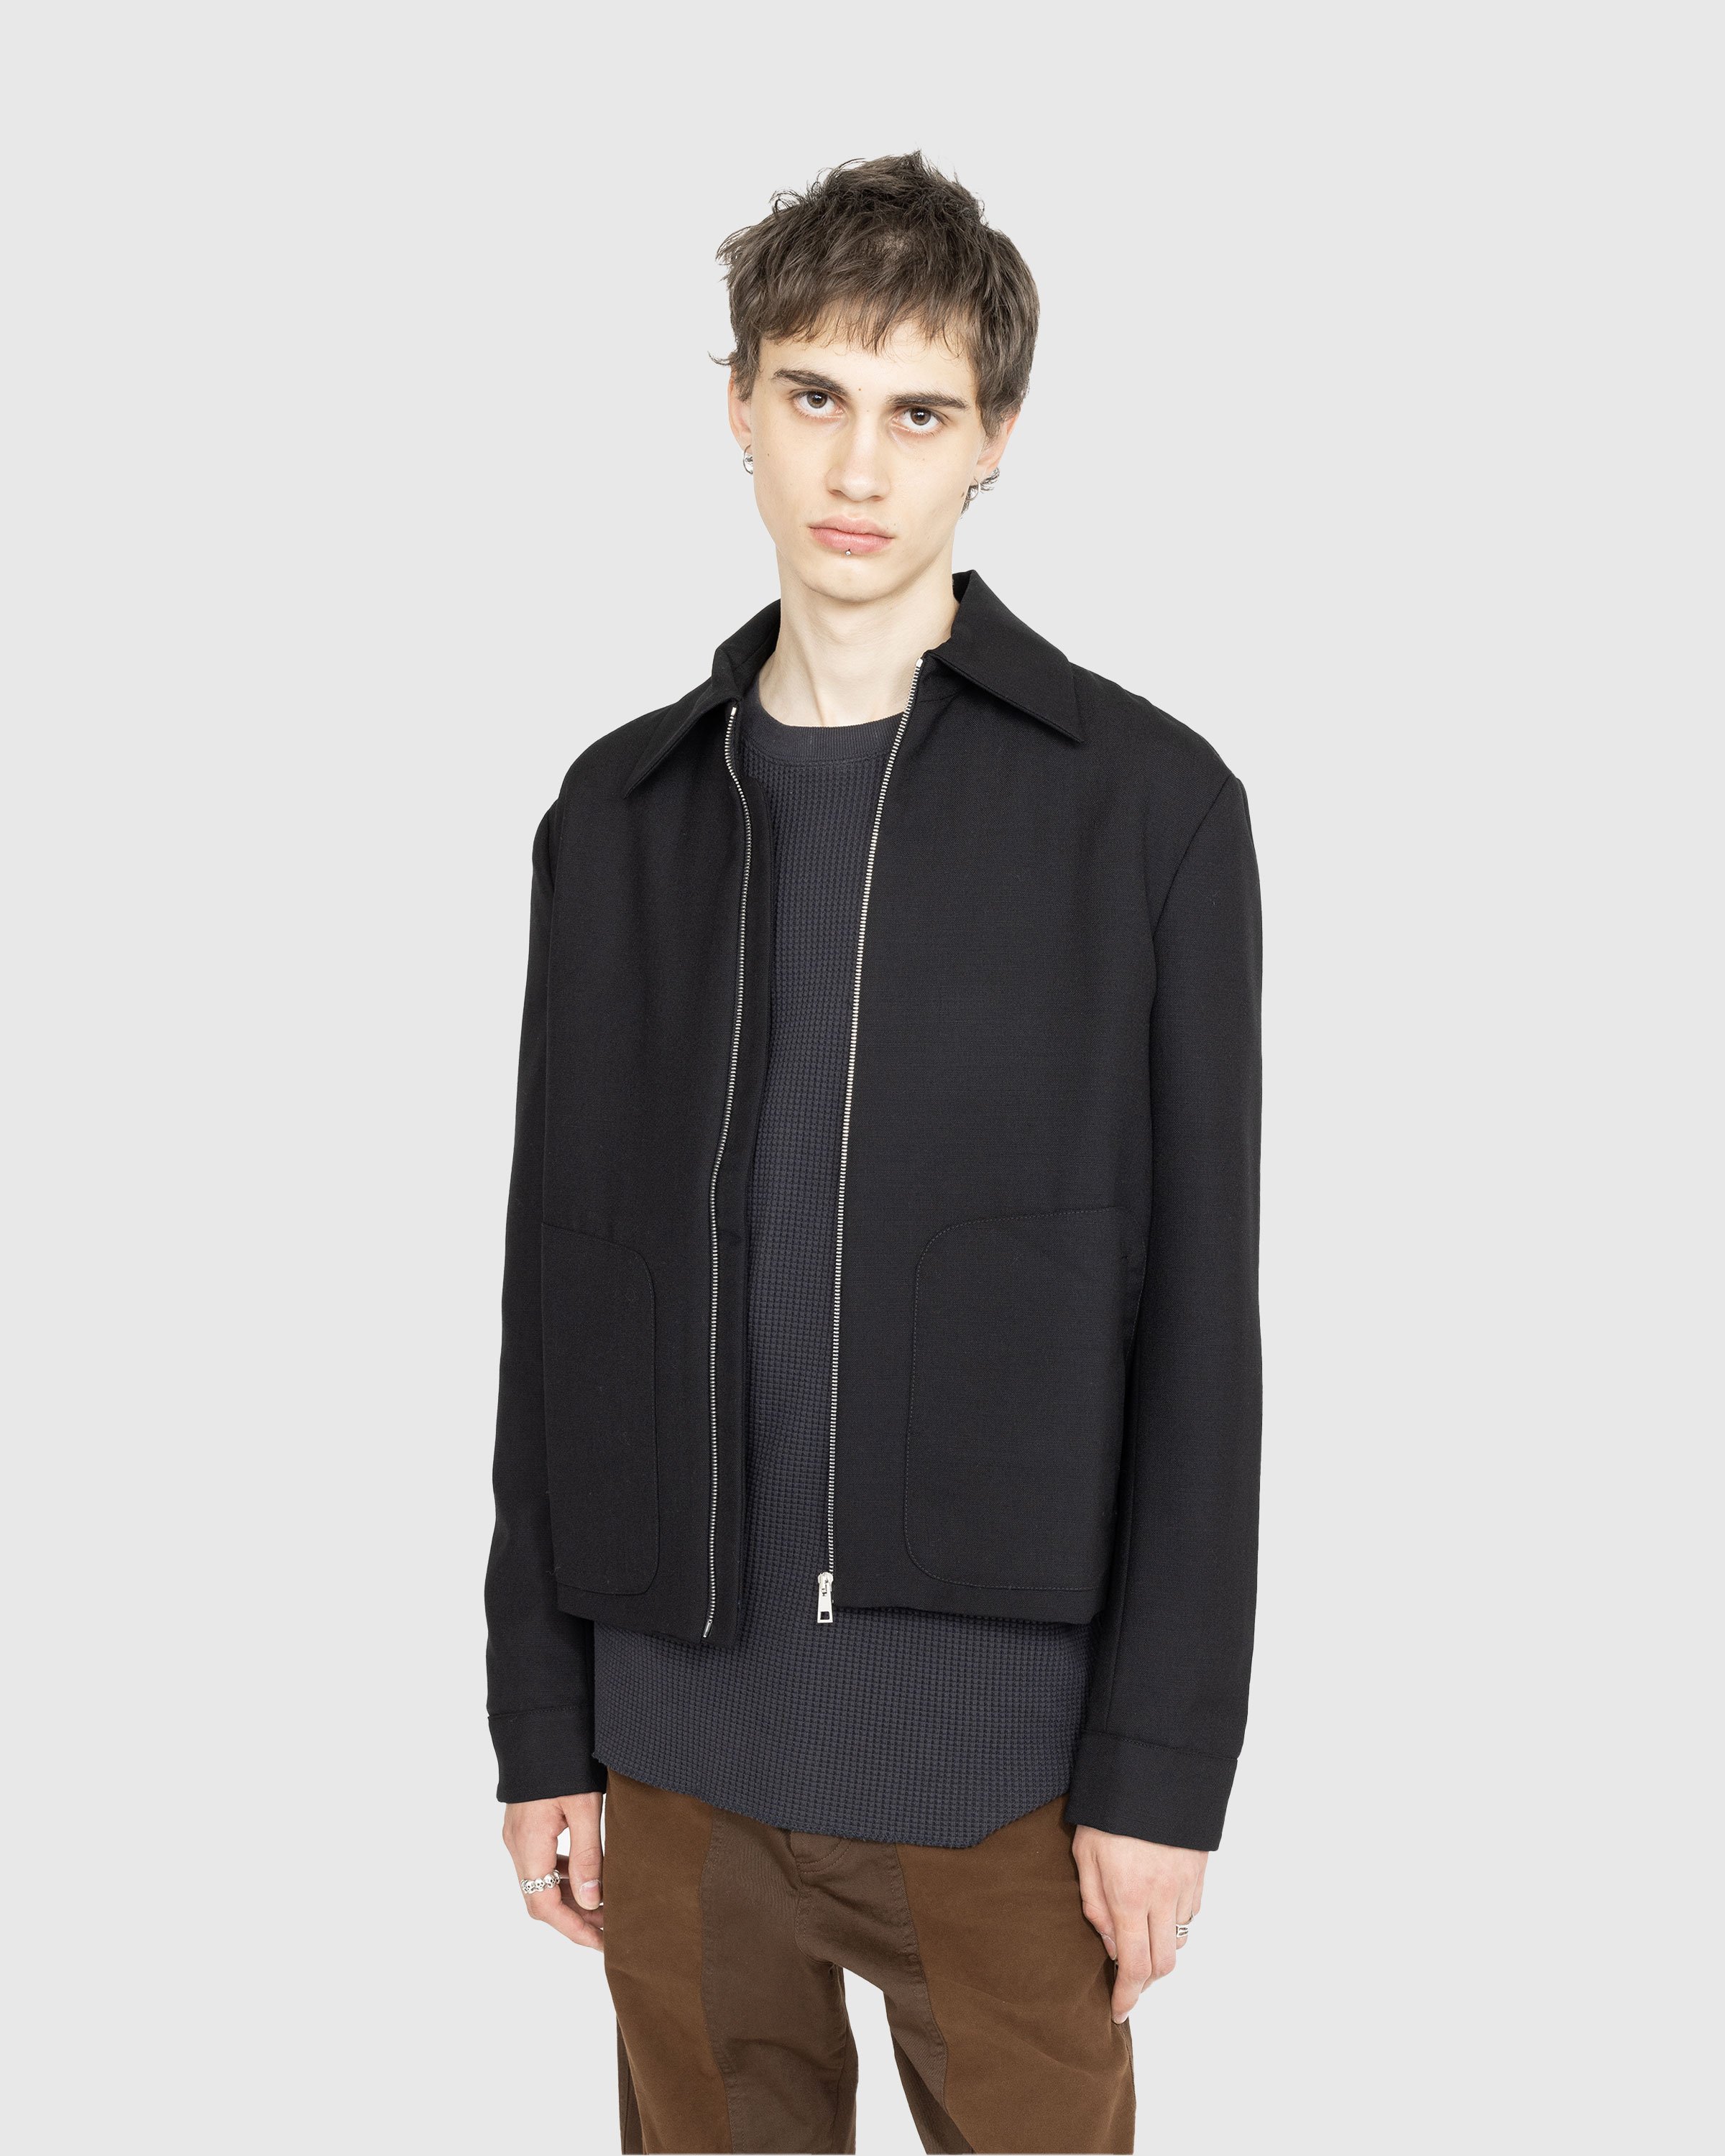 Winnie New York – Classic Zip-Up Jacket Black | Highsnobiety Shop